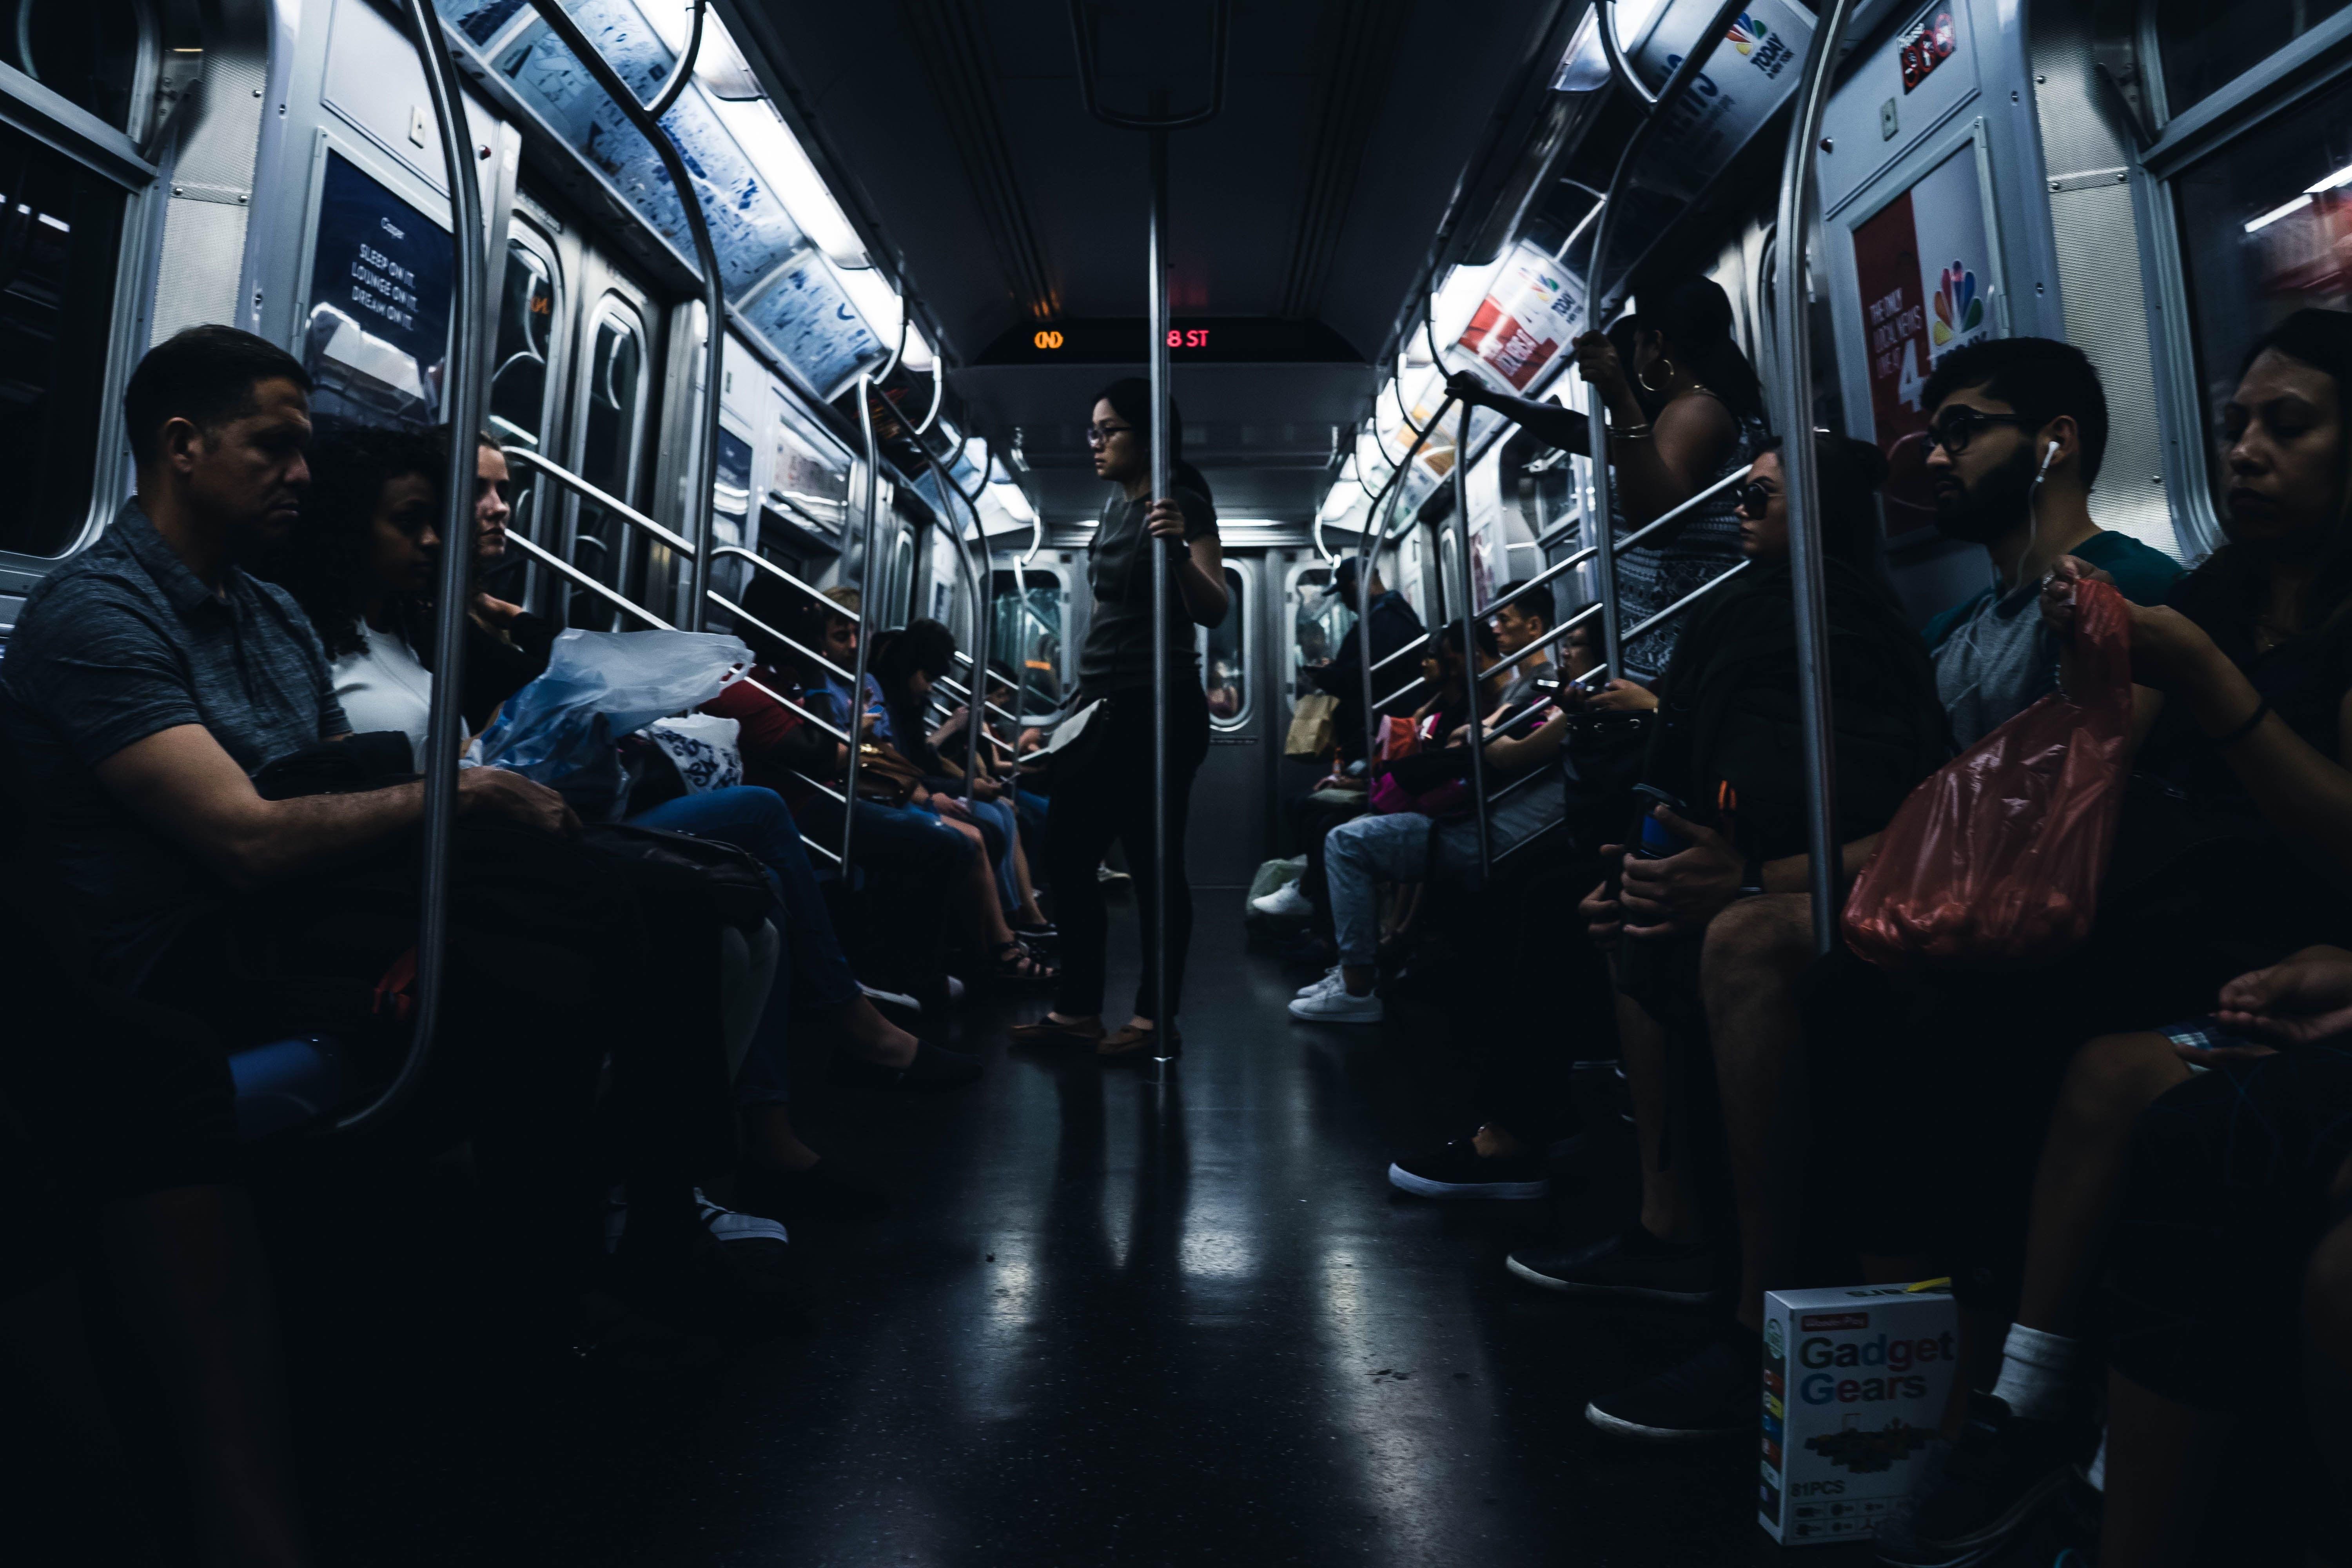 Utasok a metrón külföldön